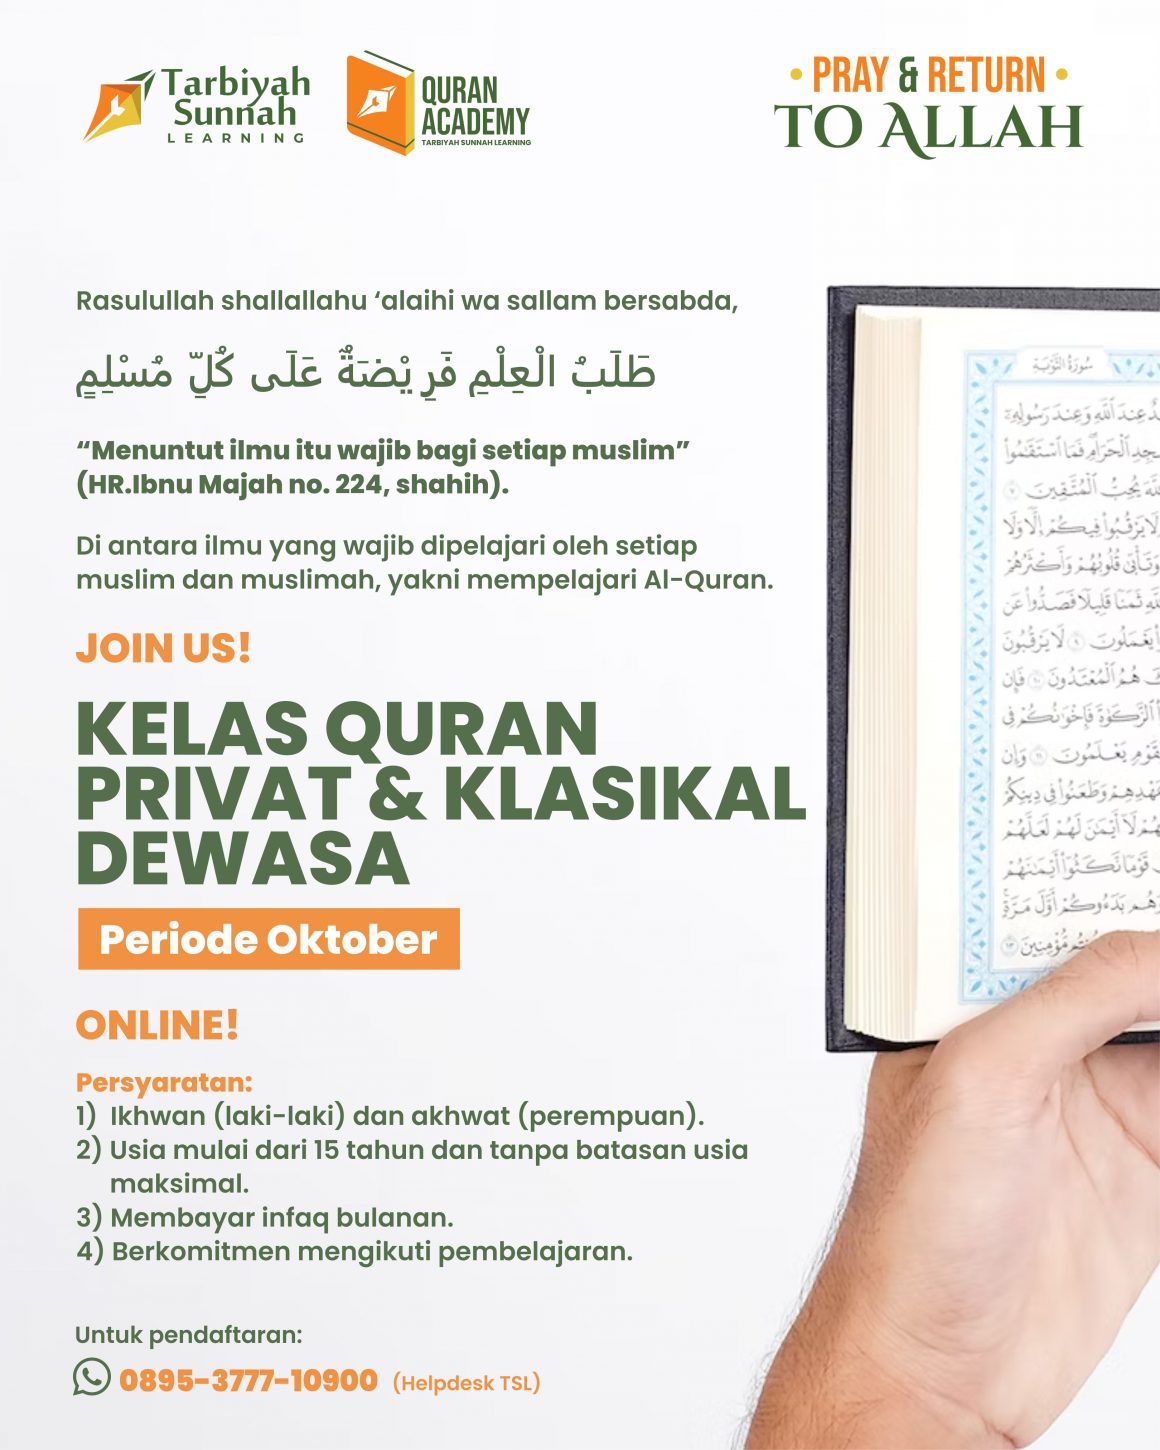 JOIN US! Kelas Quran Privat dan Klasikal Dewasa Periode Oktober